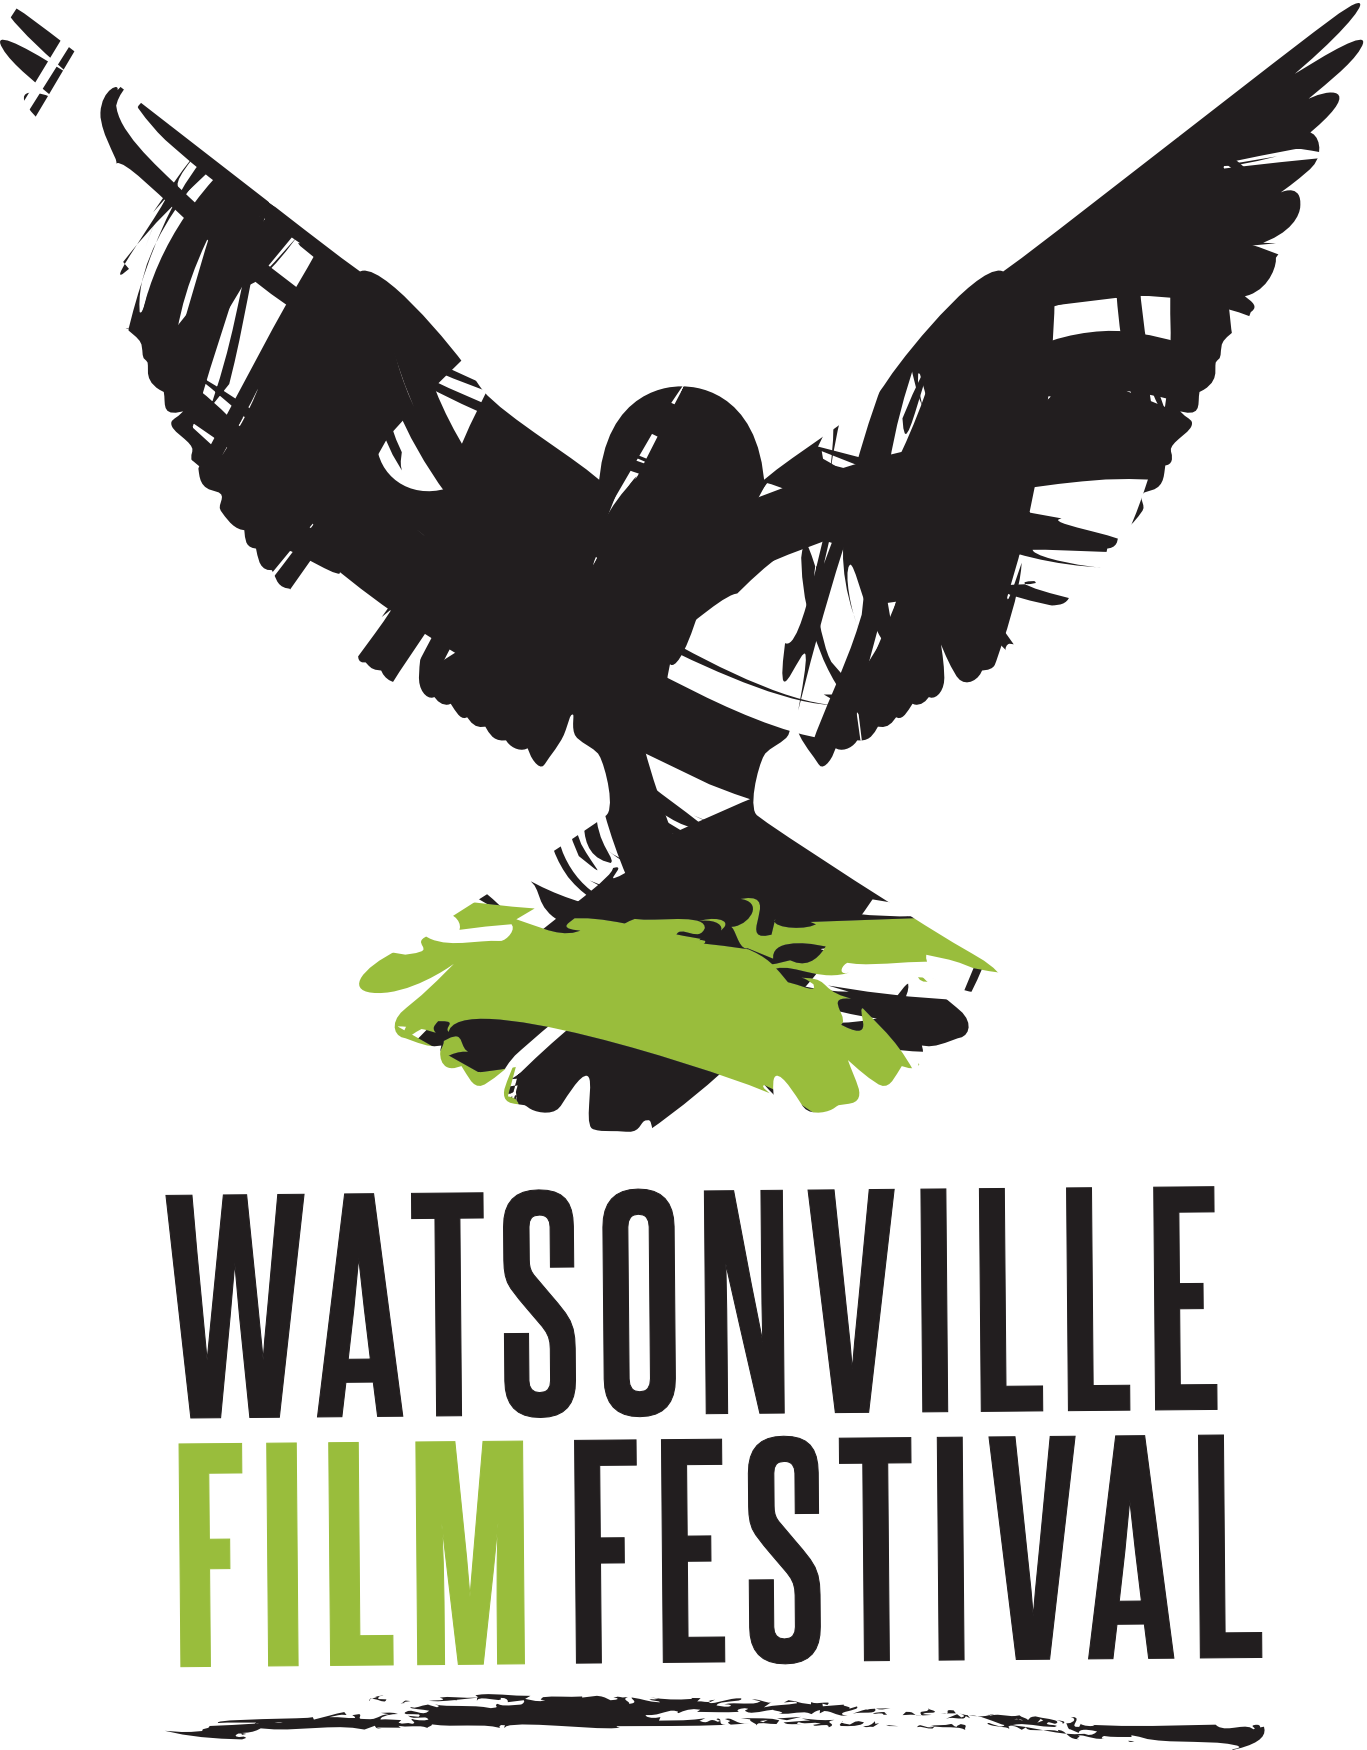 Watsonville Film Festival